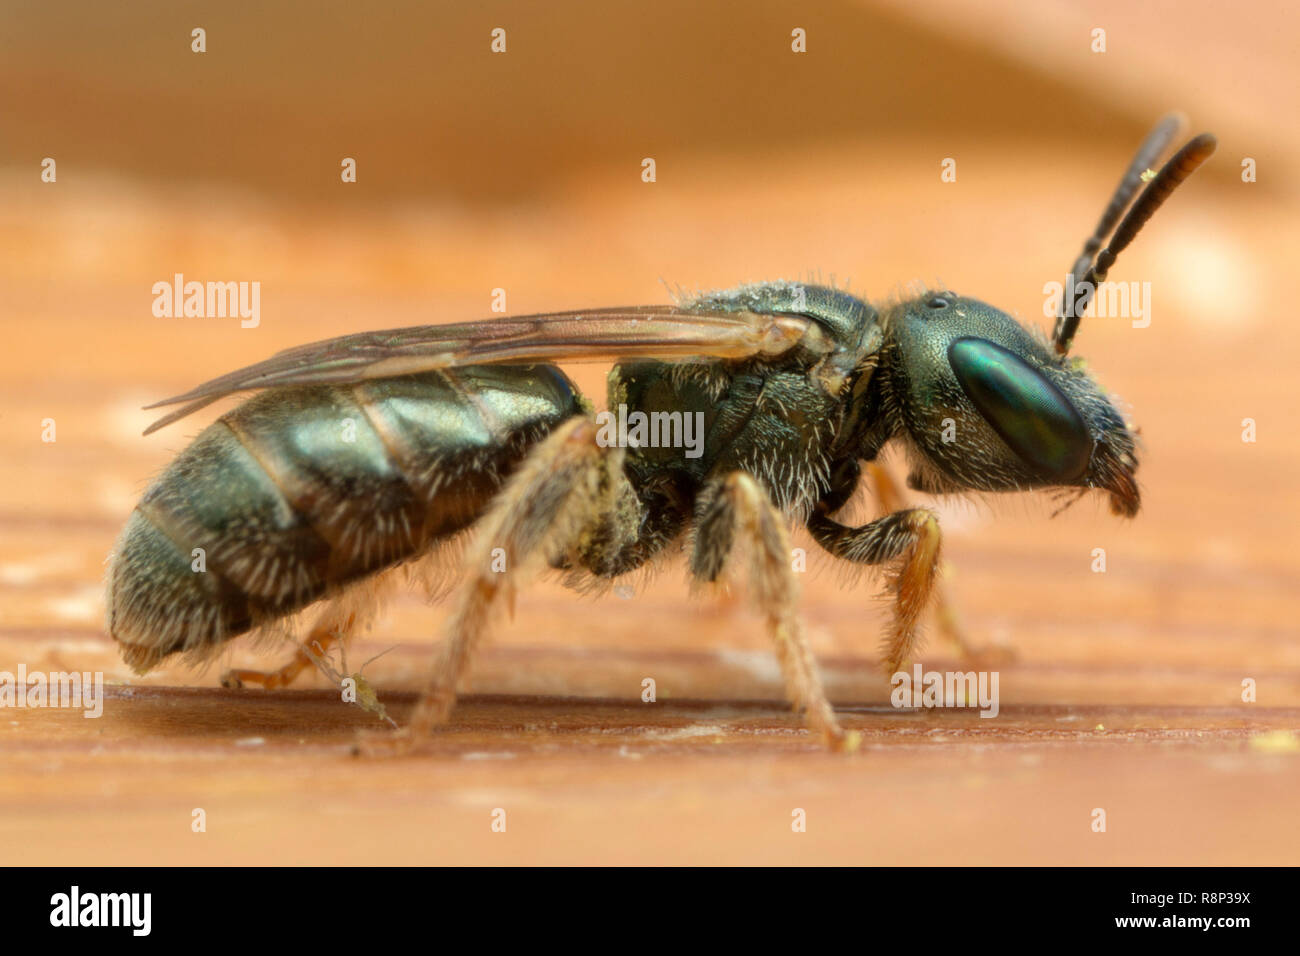 Tiny green wasp Stock Photo